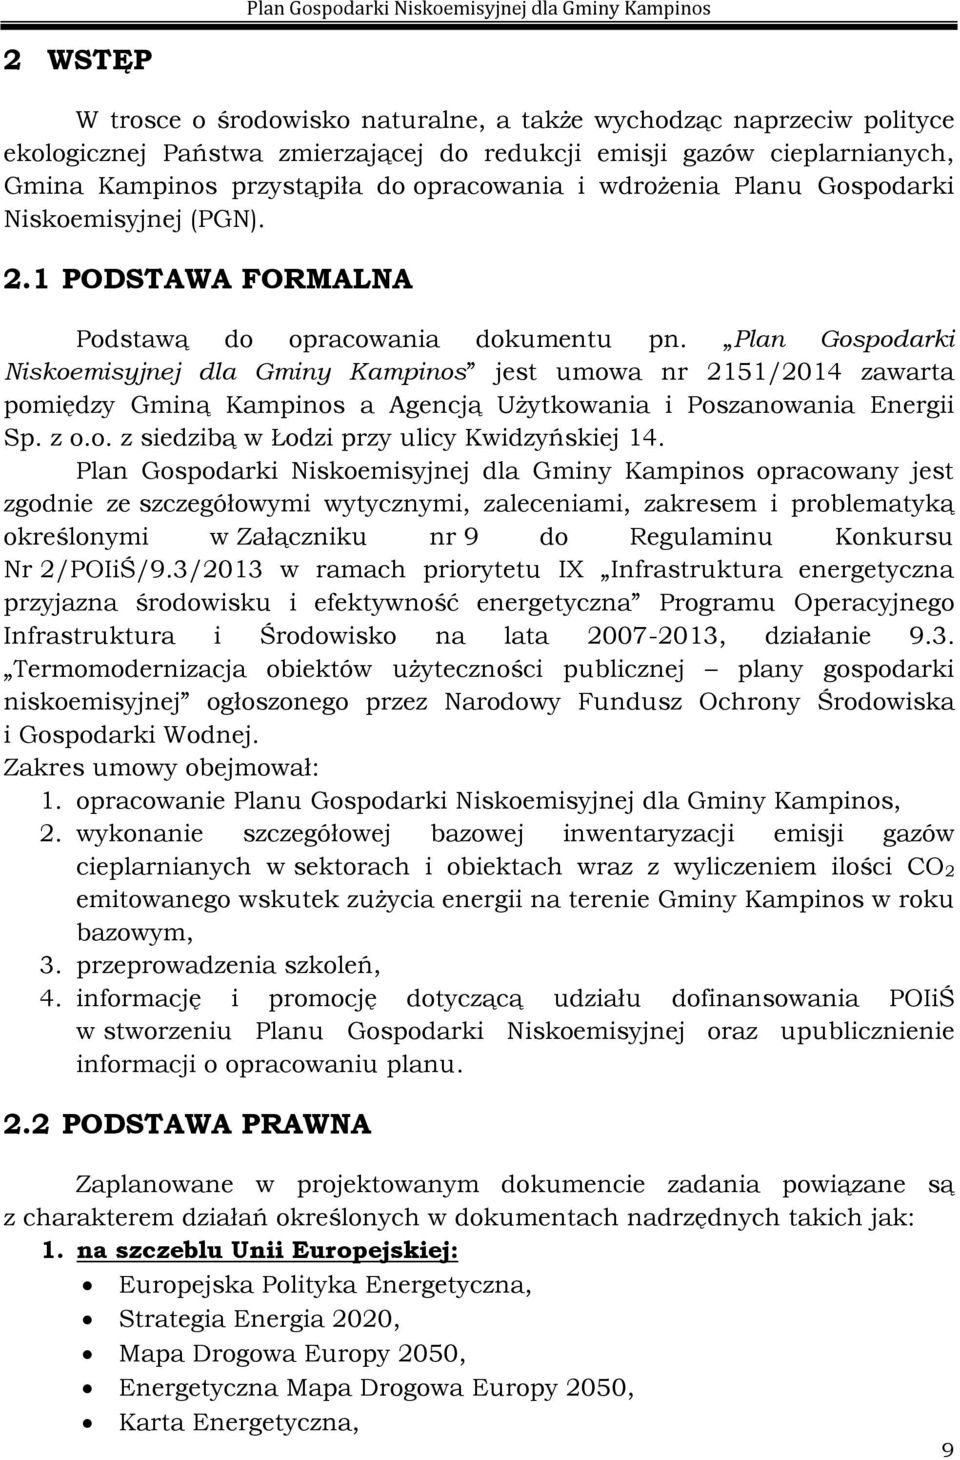 Plan Gospodarki Niskoemisyjnej dla Gminy Kampinos jest umowa nr 2151/2014 zawarta pomiędzy Gminą Kampinos a Agencją Użytkowania i Poszanowania Energii Sp. z o.o. z siedzibą w Łodzi przy ulicy Kwidzyńskiej 14.